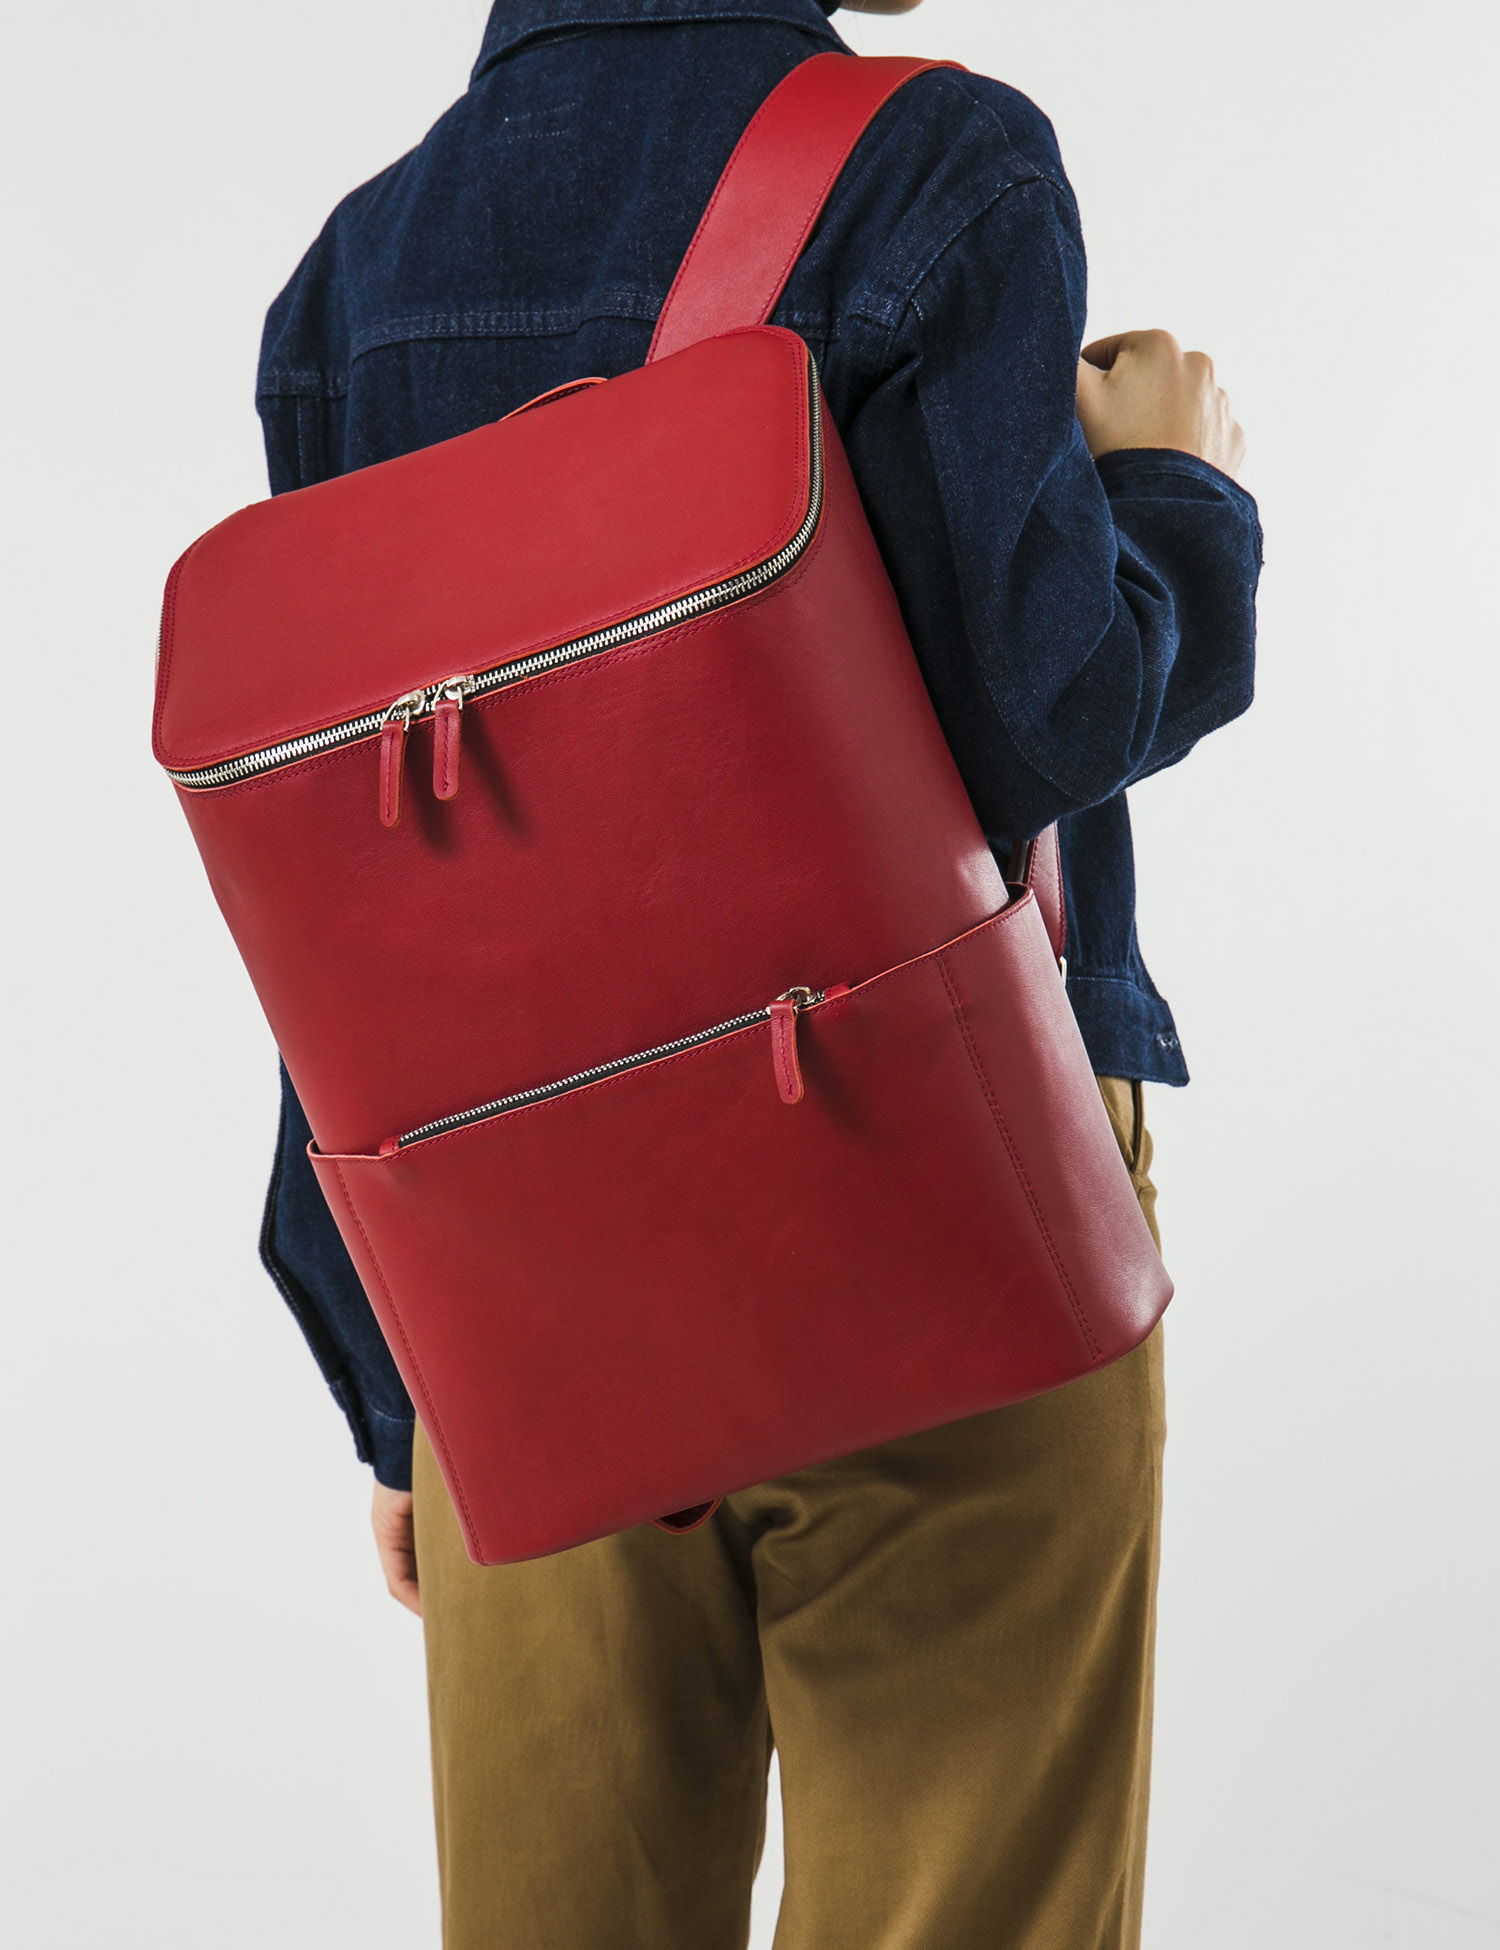 Картинка Жіночий червоний шкіряний рюкзак